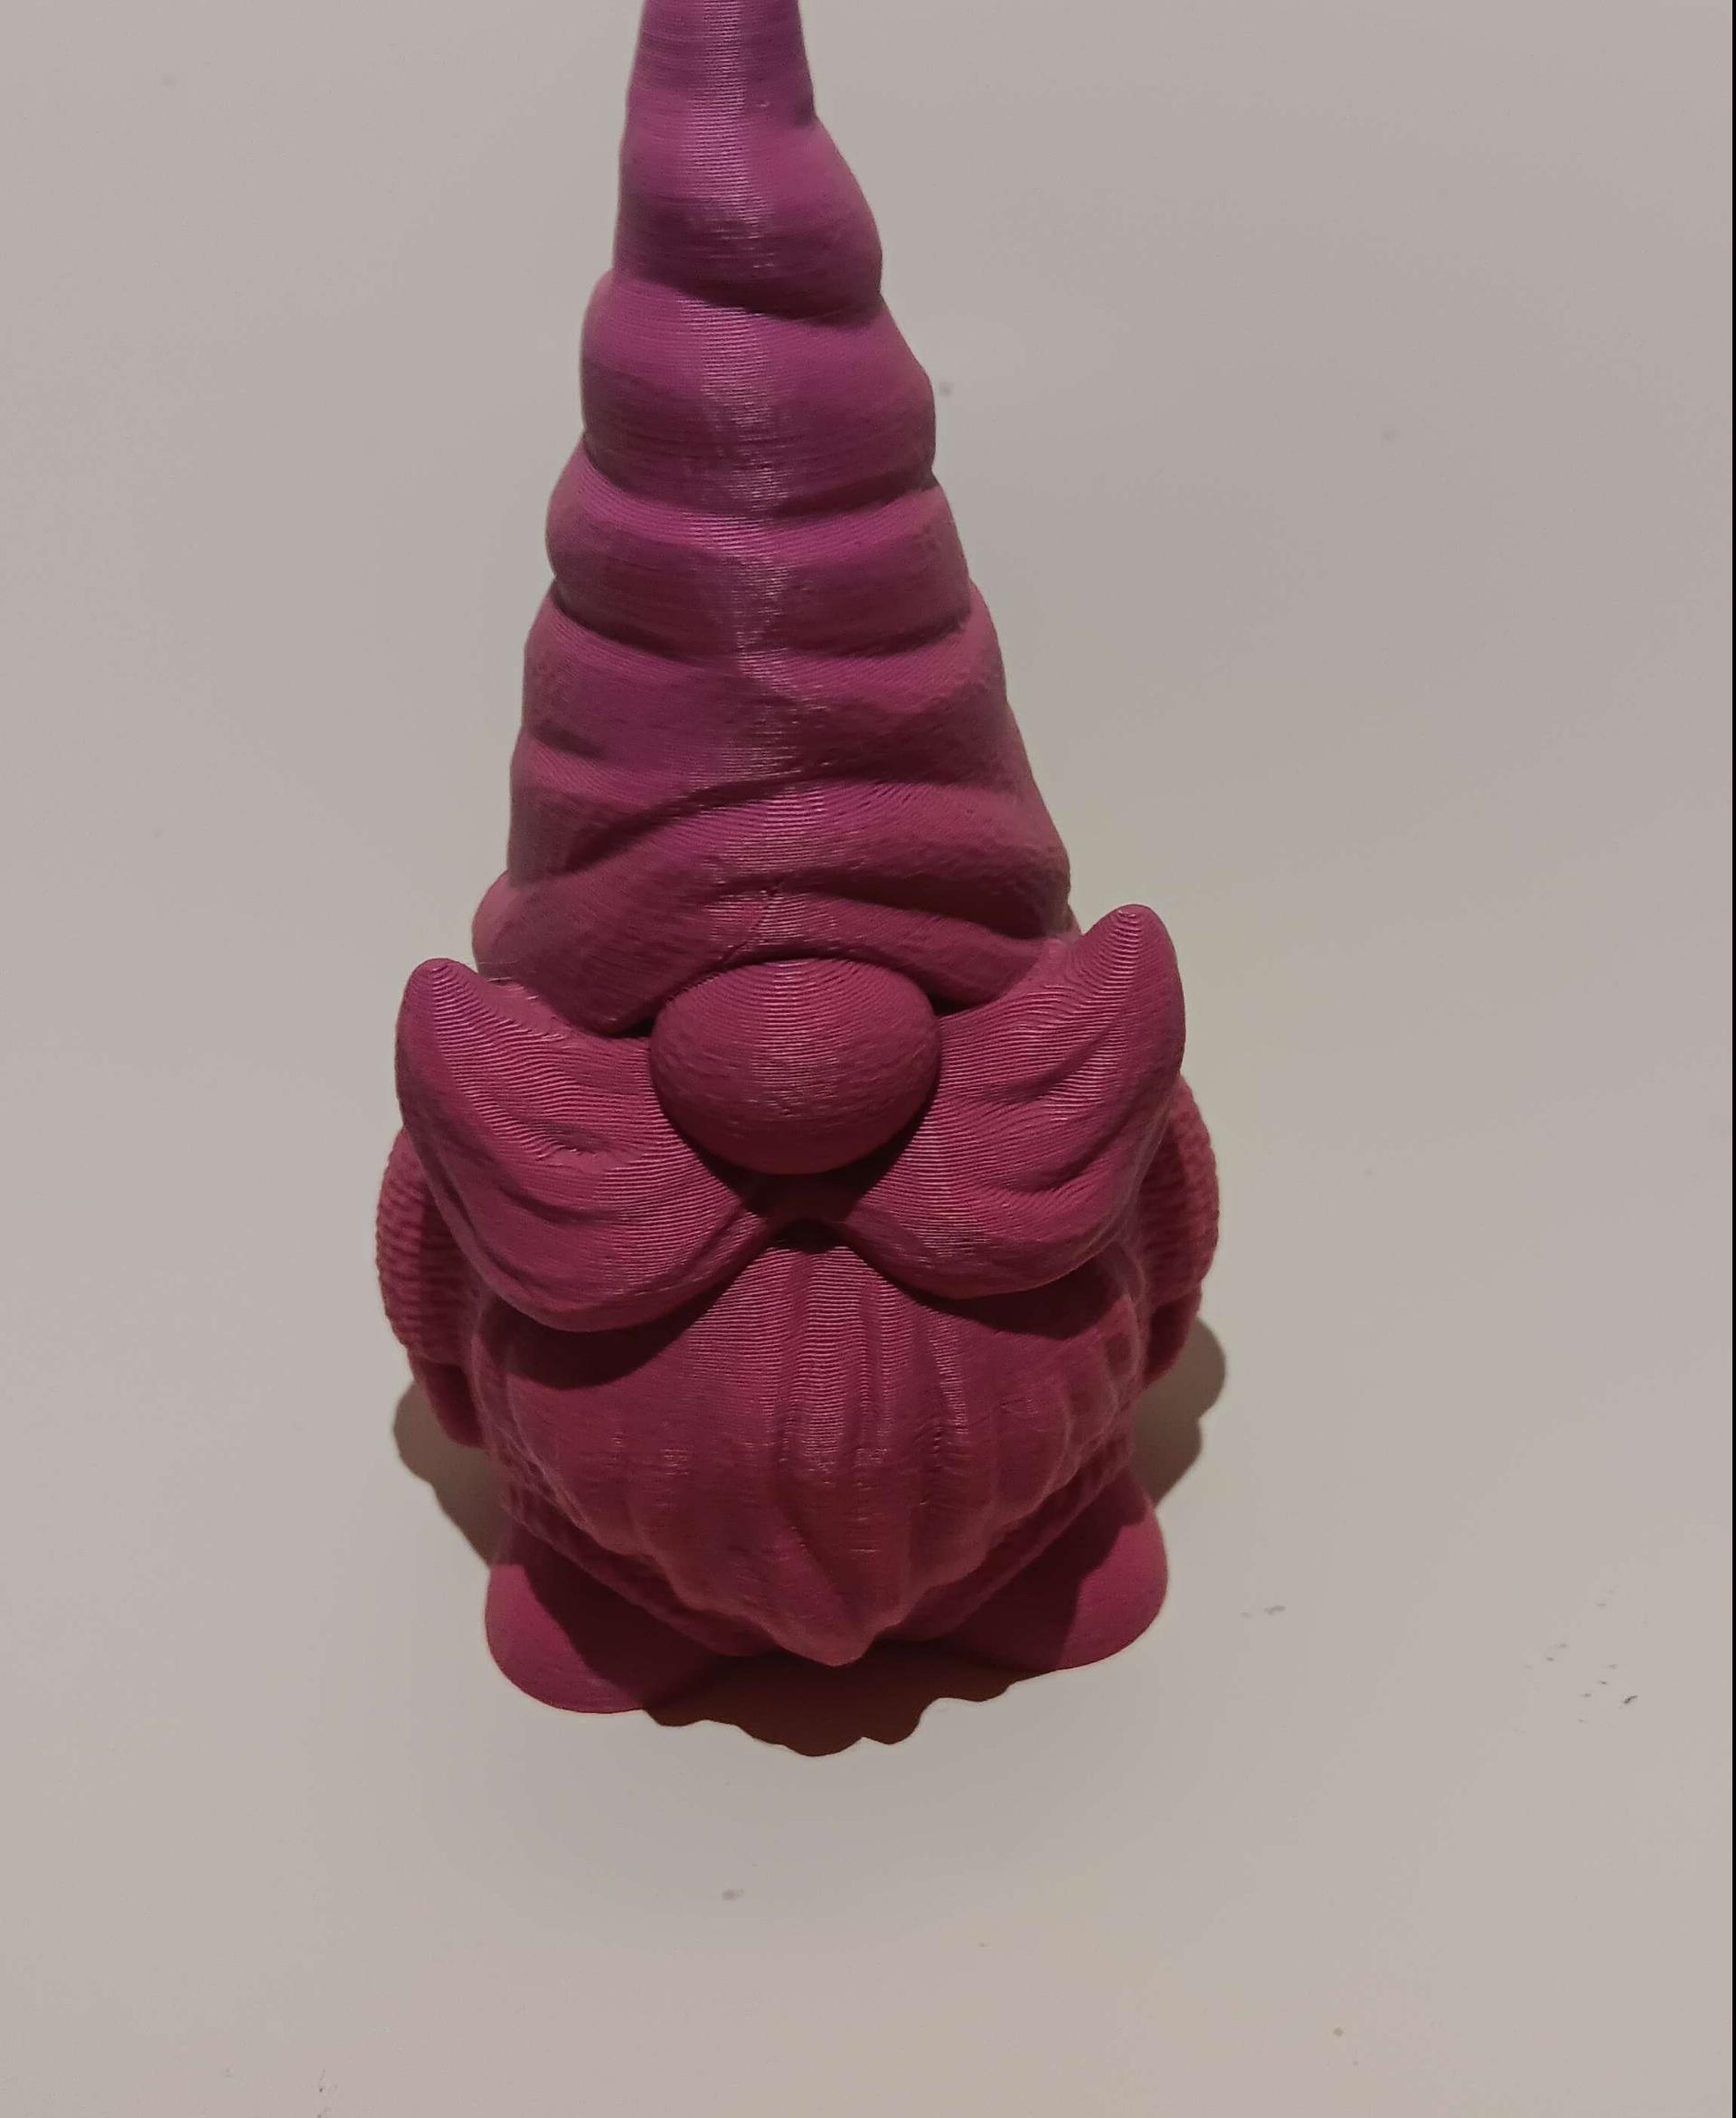 Fillable Gnome 3d model